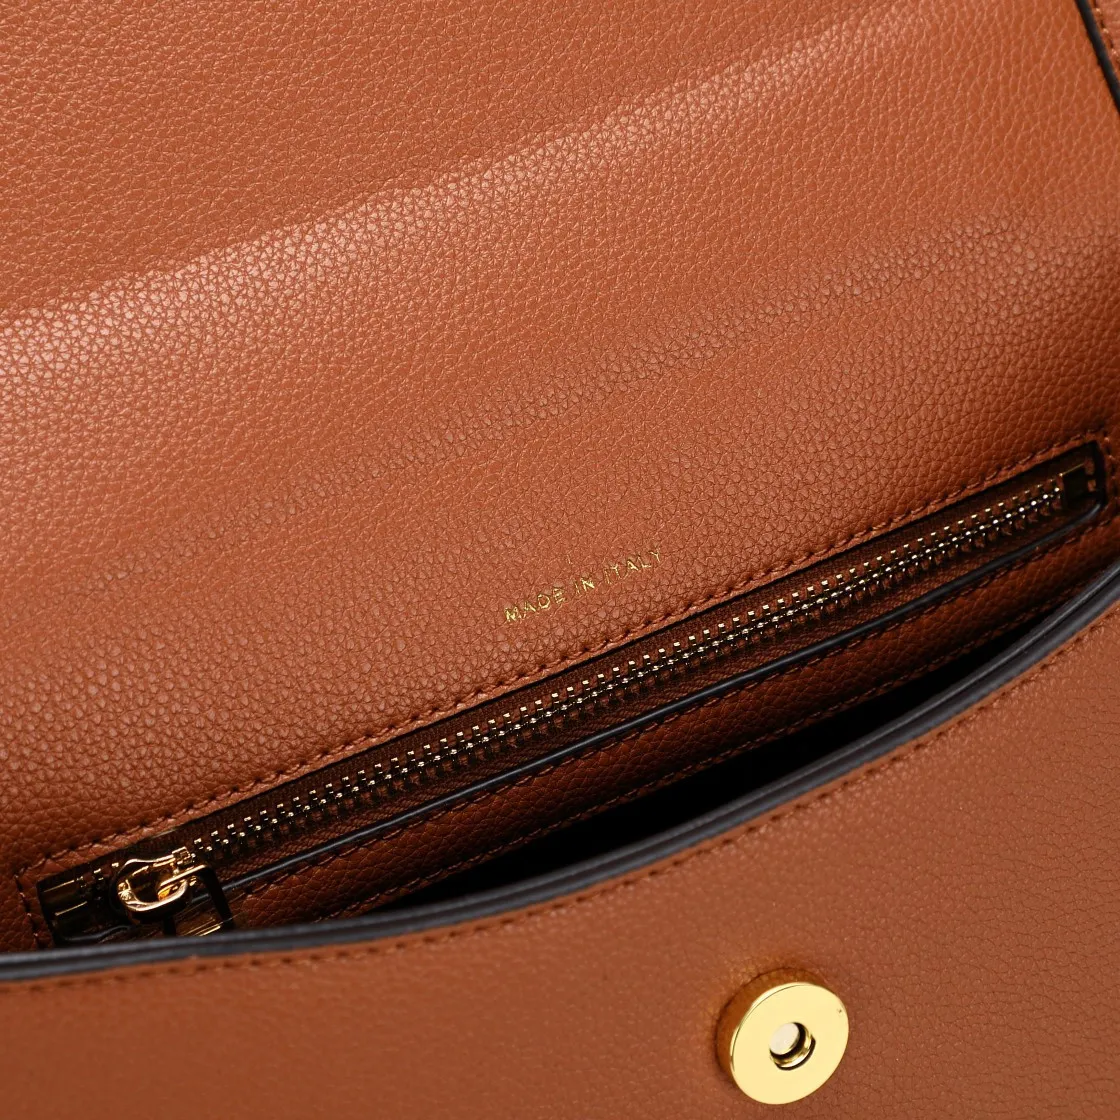 Marque Classic Designers TF Tara sacs en cuir plein sac à main modèle 5226 sacs à bandoulière Top qualité mode bandoulière avec boîte d'origine